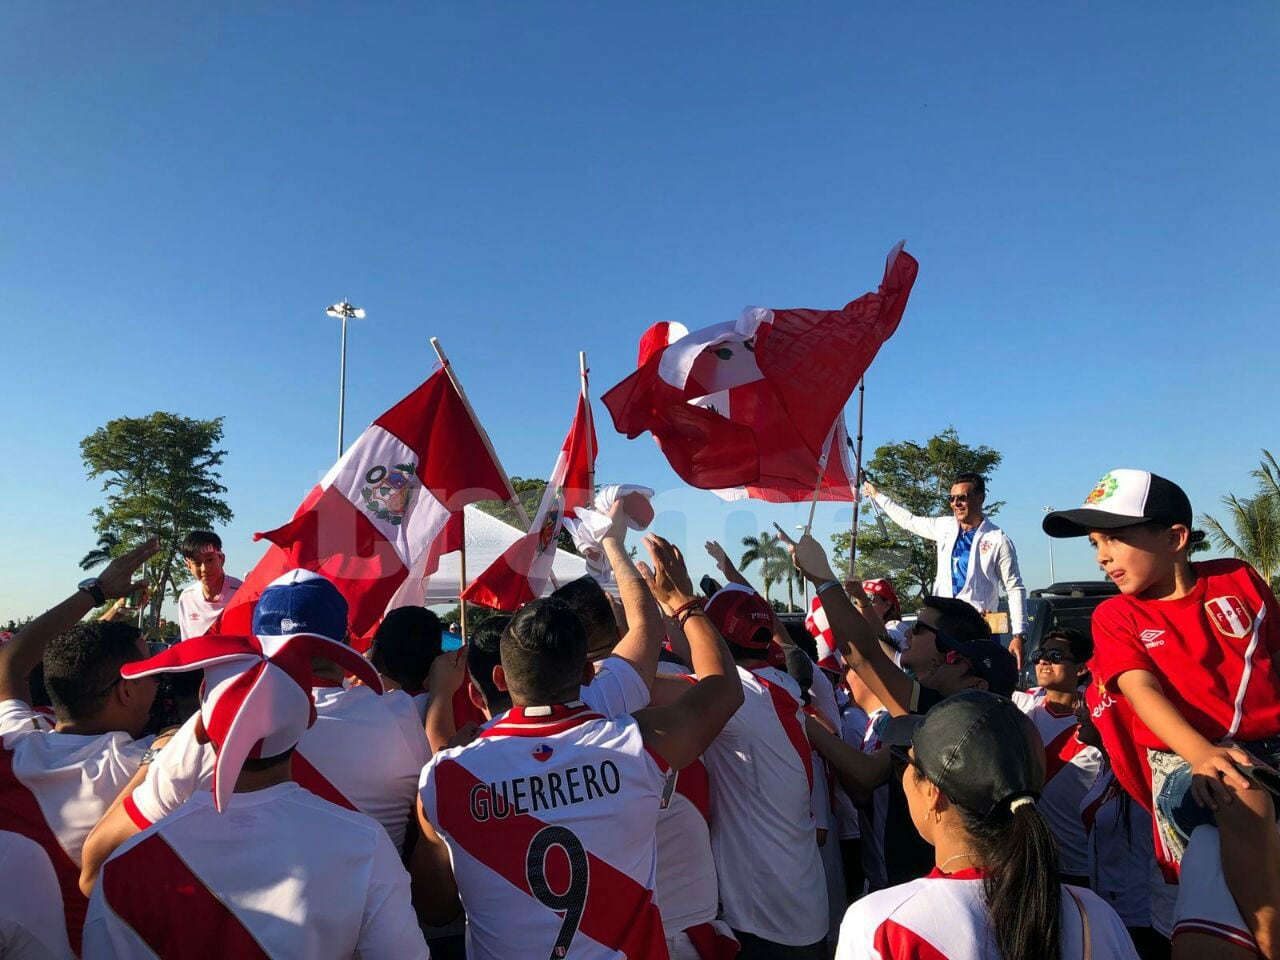 Miles de peruanos llegaron al  Hard Rock Stadium de Miami para poder alentar a la selección en su partido amistoso contra Croacia.